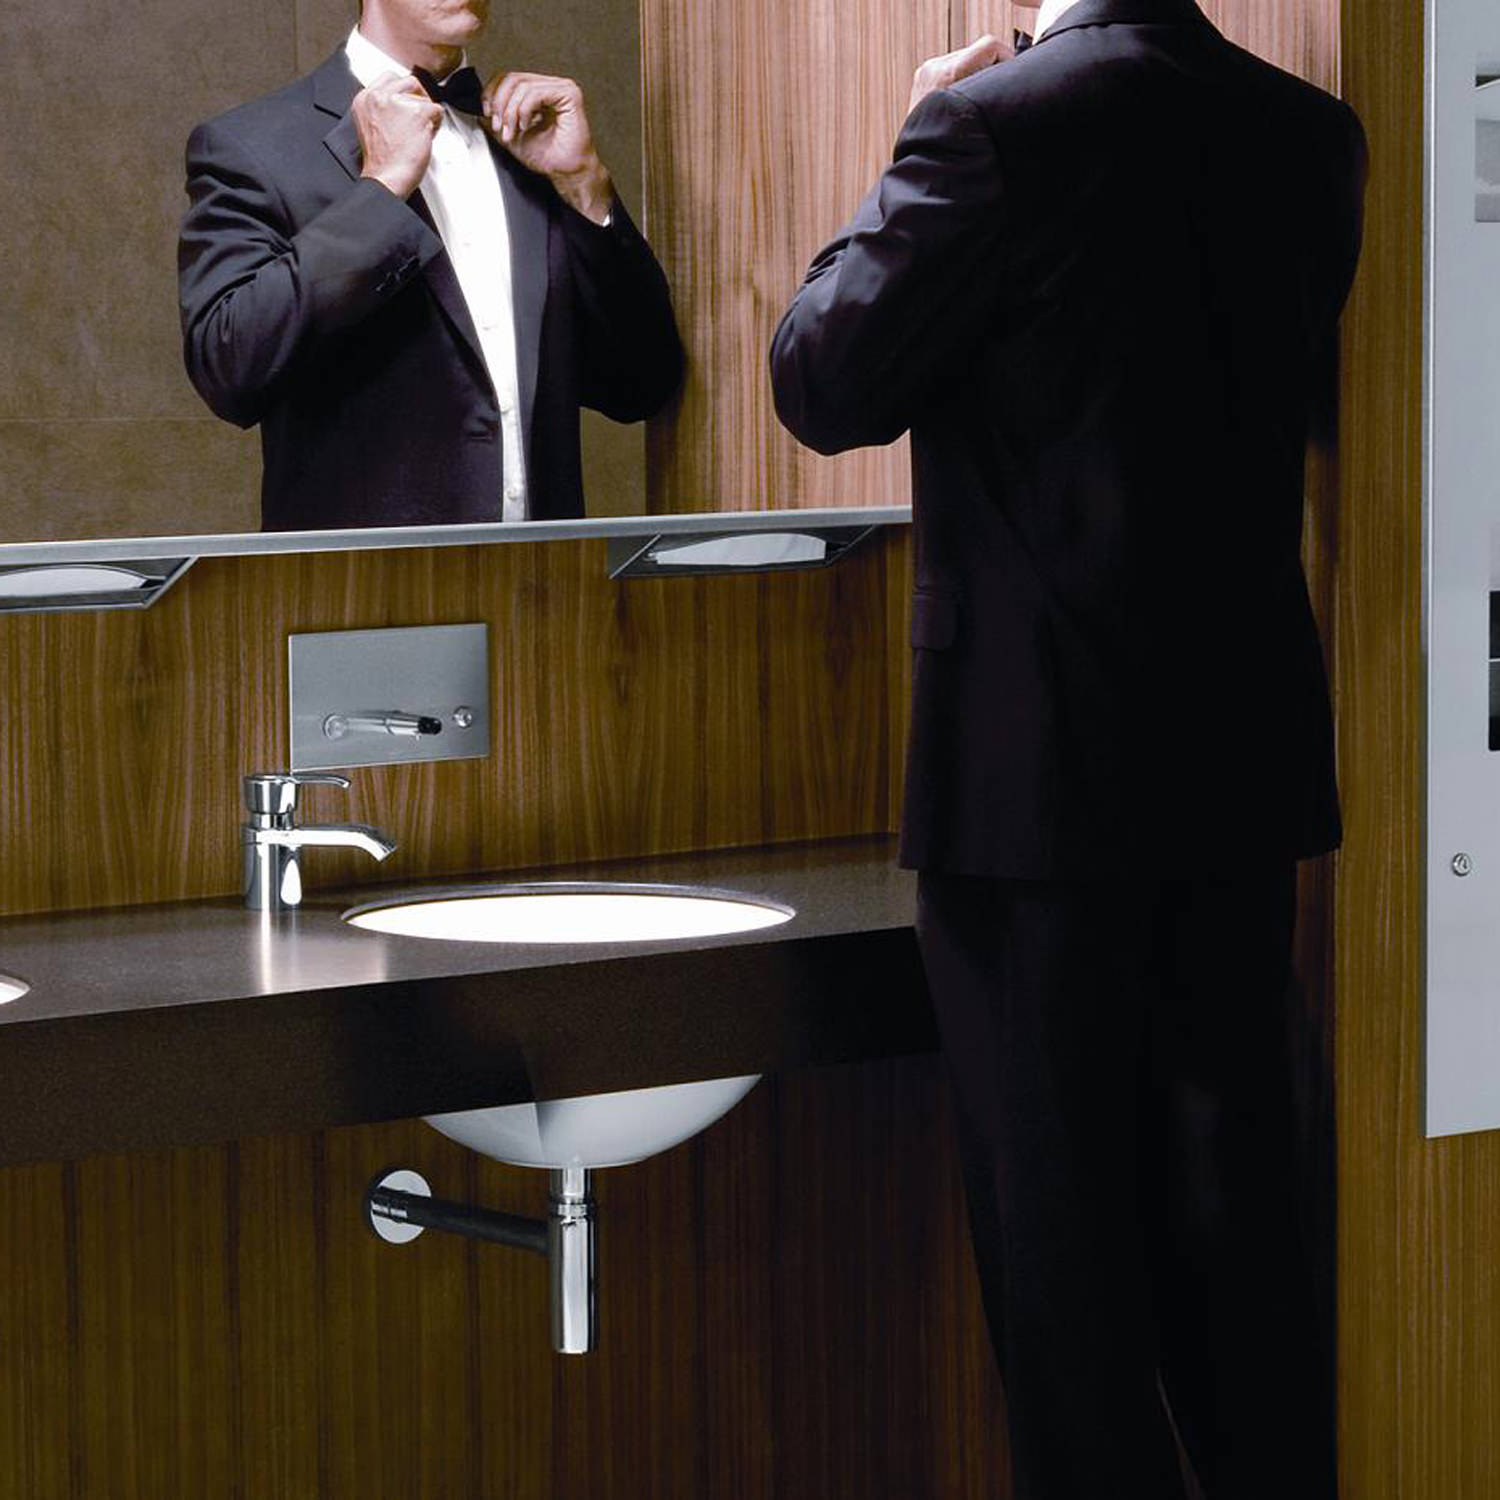 Recessed paper towel dispenser behind mirror in stainless steel